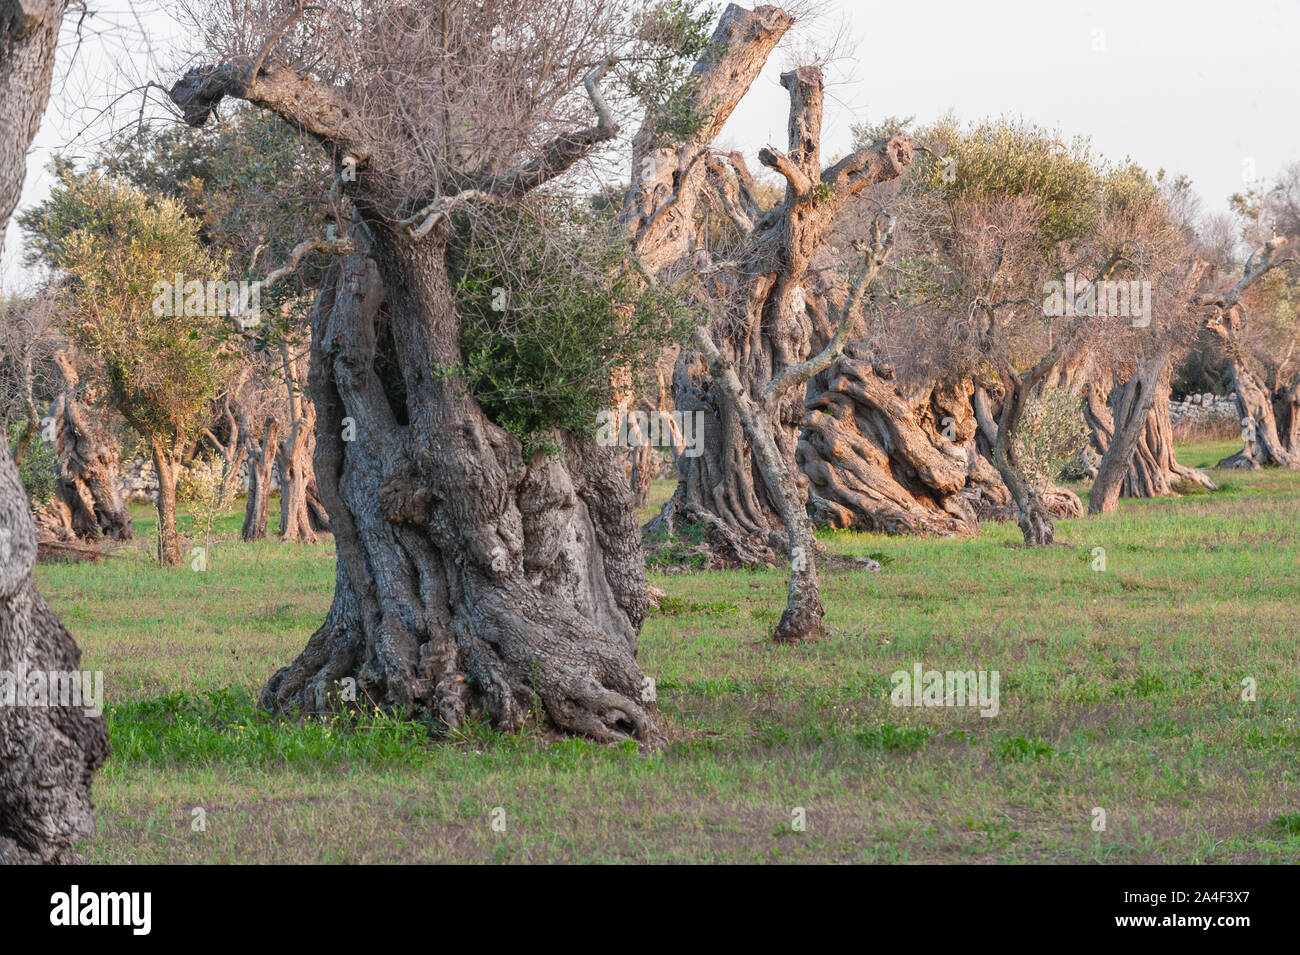 Siècles vieil olivier touchés par la maladie de Xylella fastidiosa agriculteurs ; couper les branches pour réduire l'exposition et pour essayer de sauver l'usine Banque D'Images